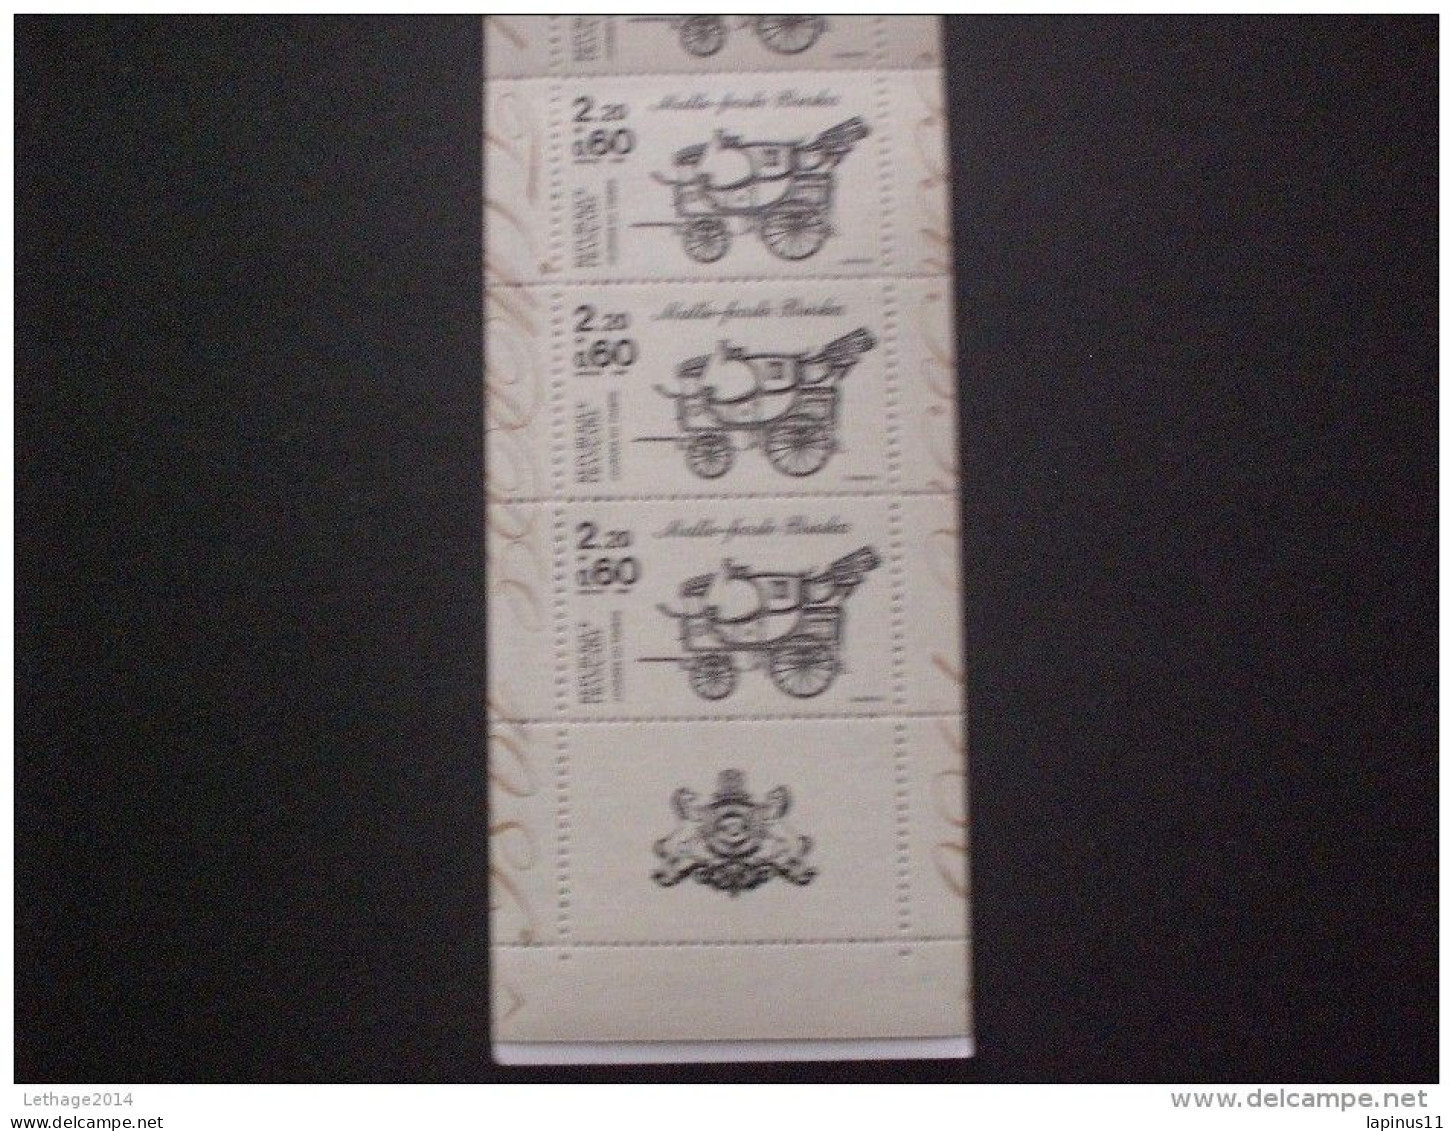 STAMPS FRANCE CARNETS 1986 Stamp Day - Bekende Personen